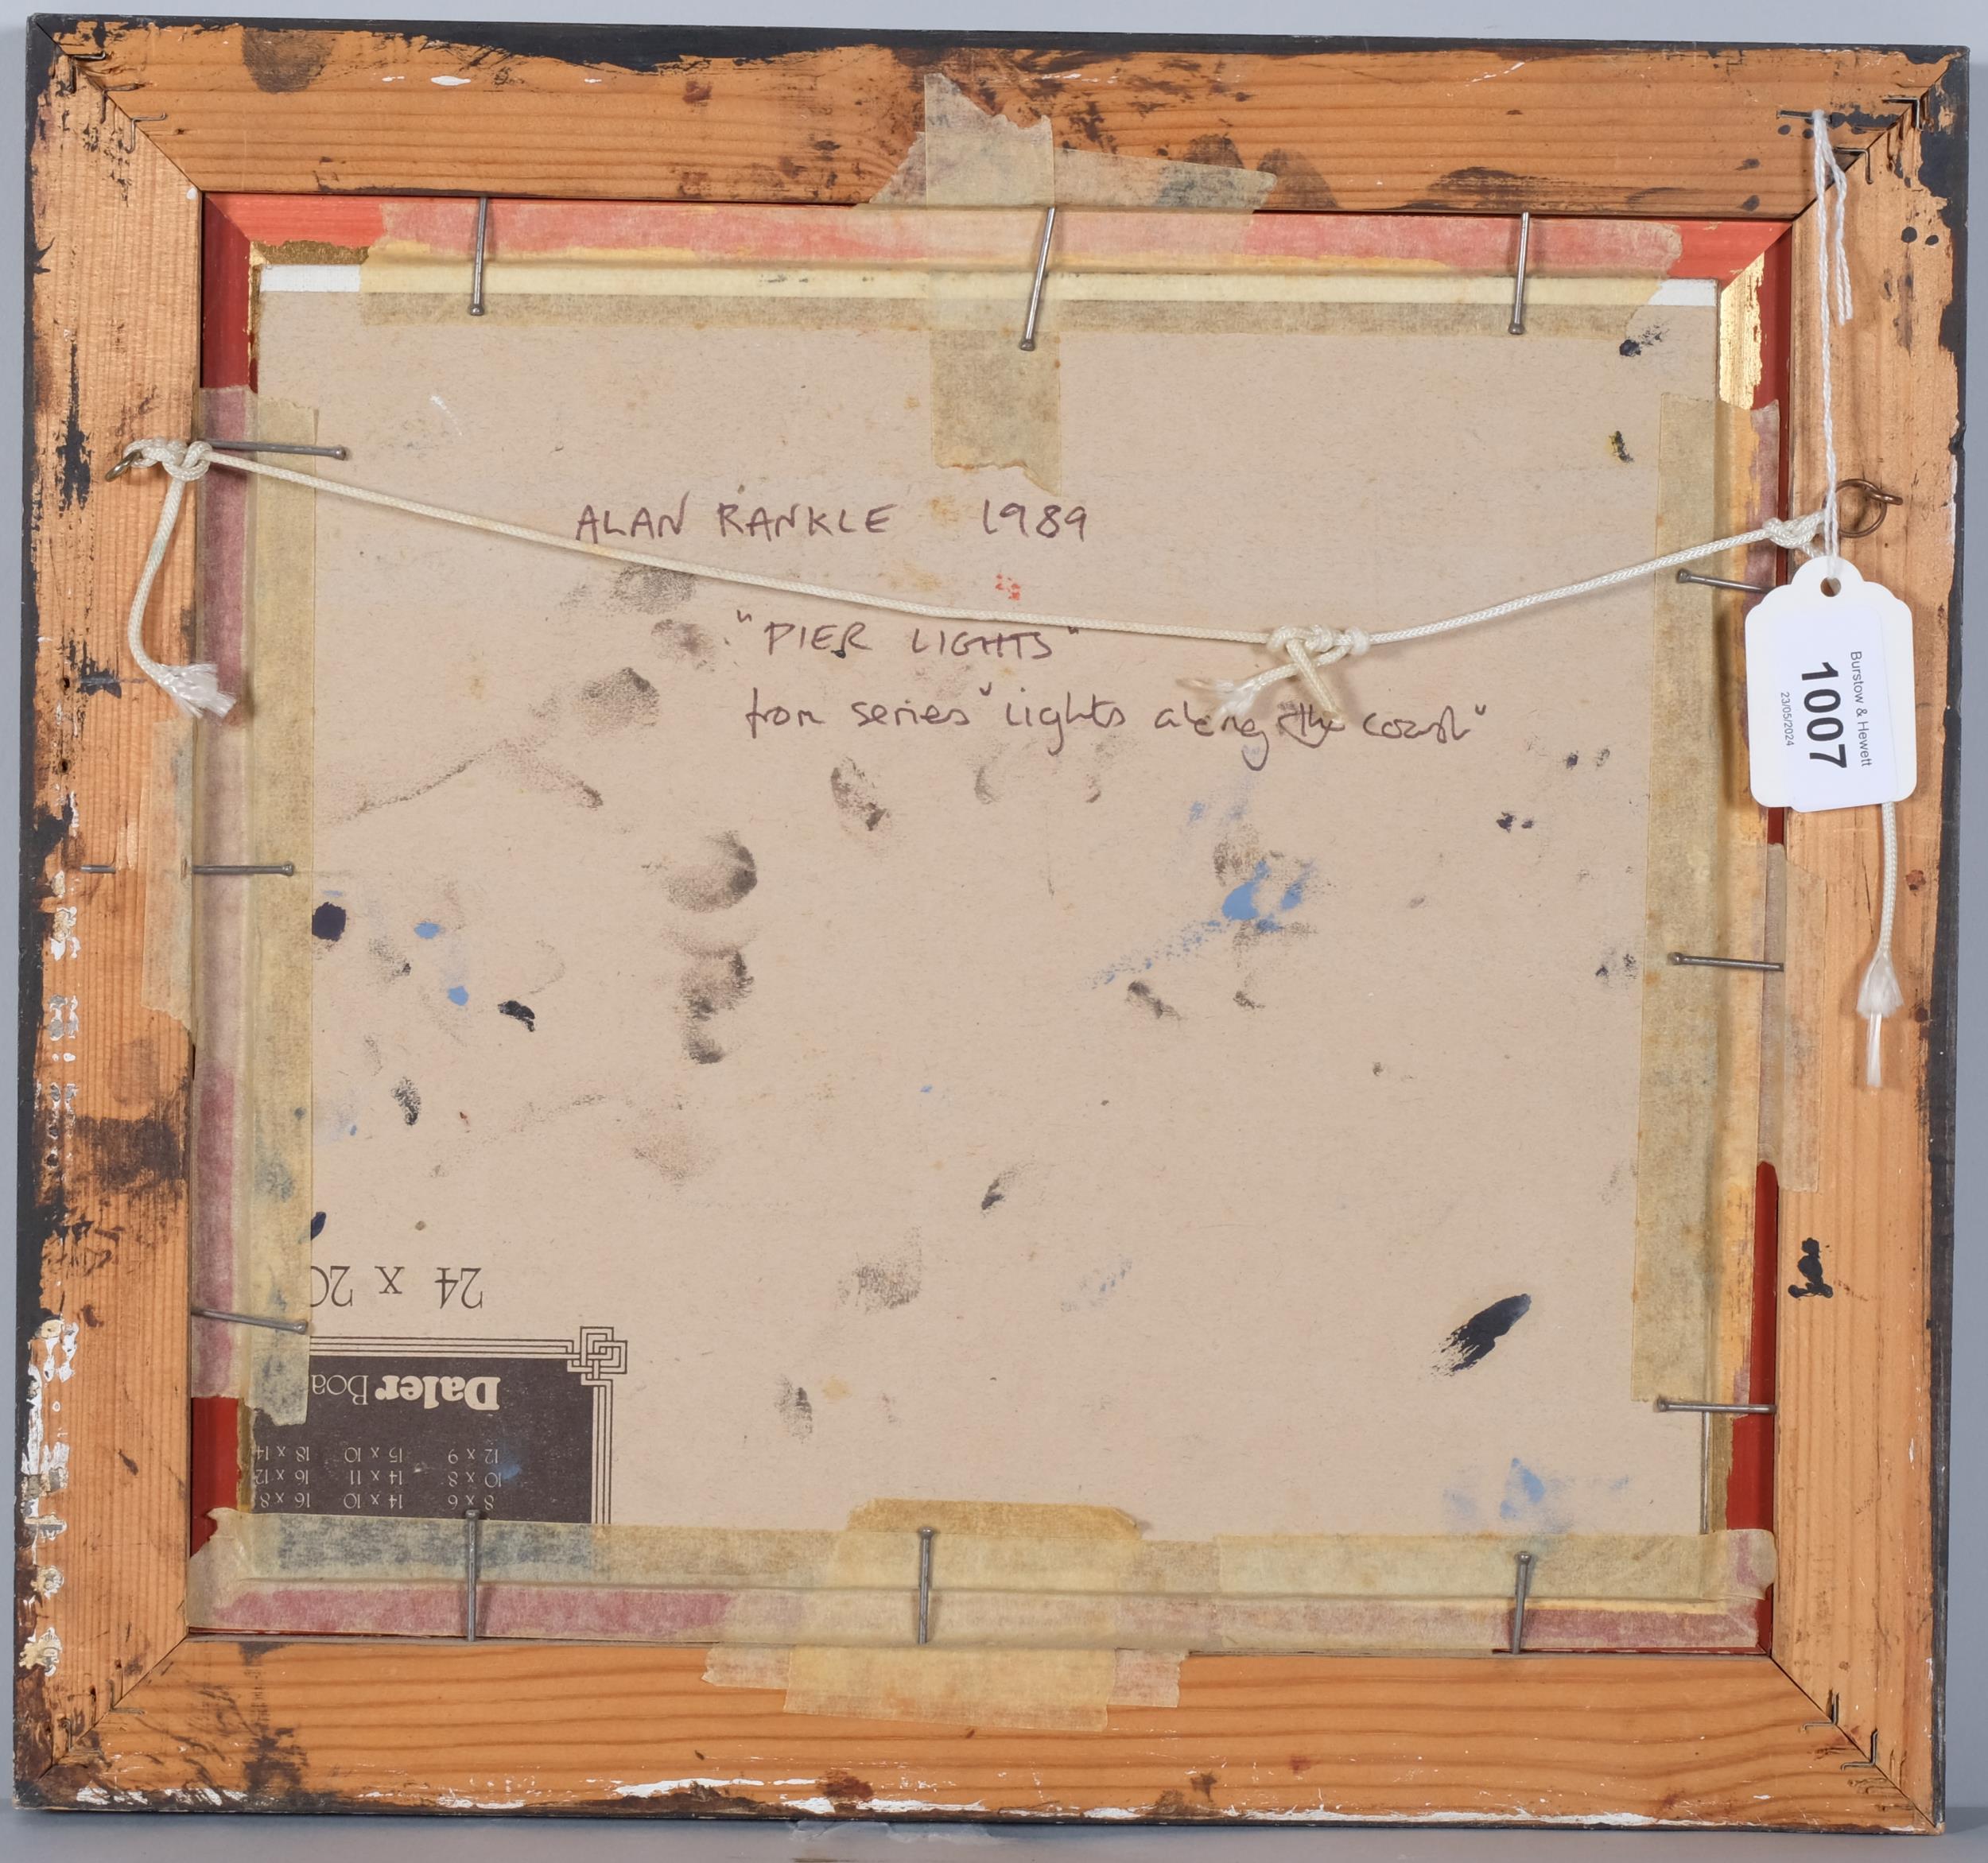 Alan Rankle, pier lights, 1989, oil on board, inscribed verso, 25cm x 28cm, framed Good original - Image 4 of 4